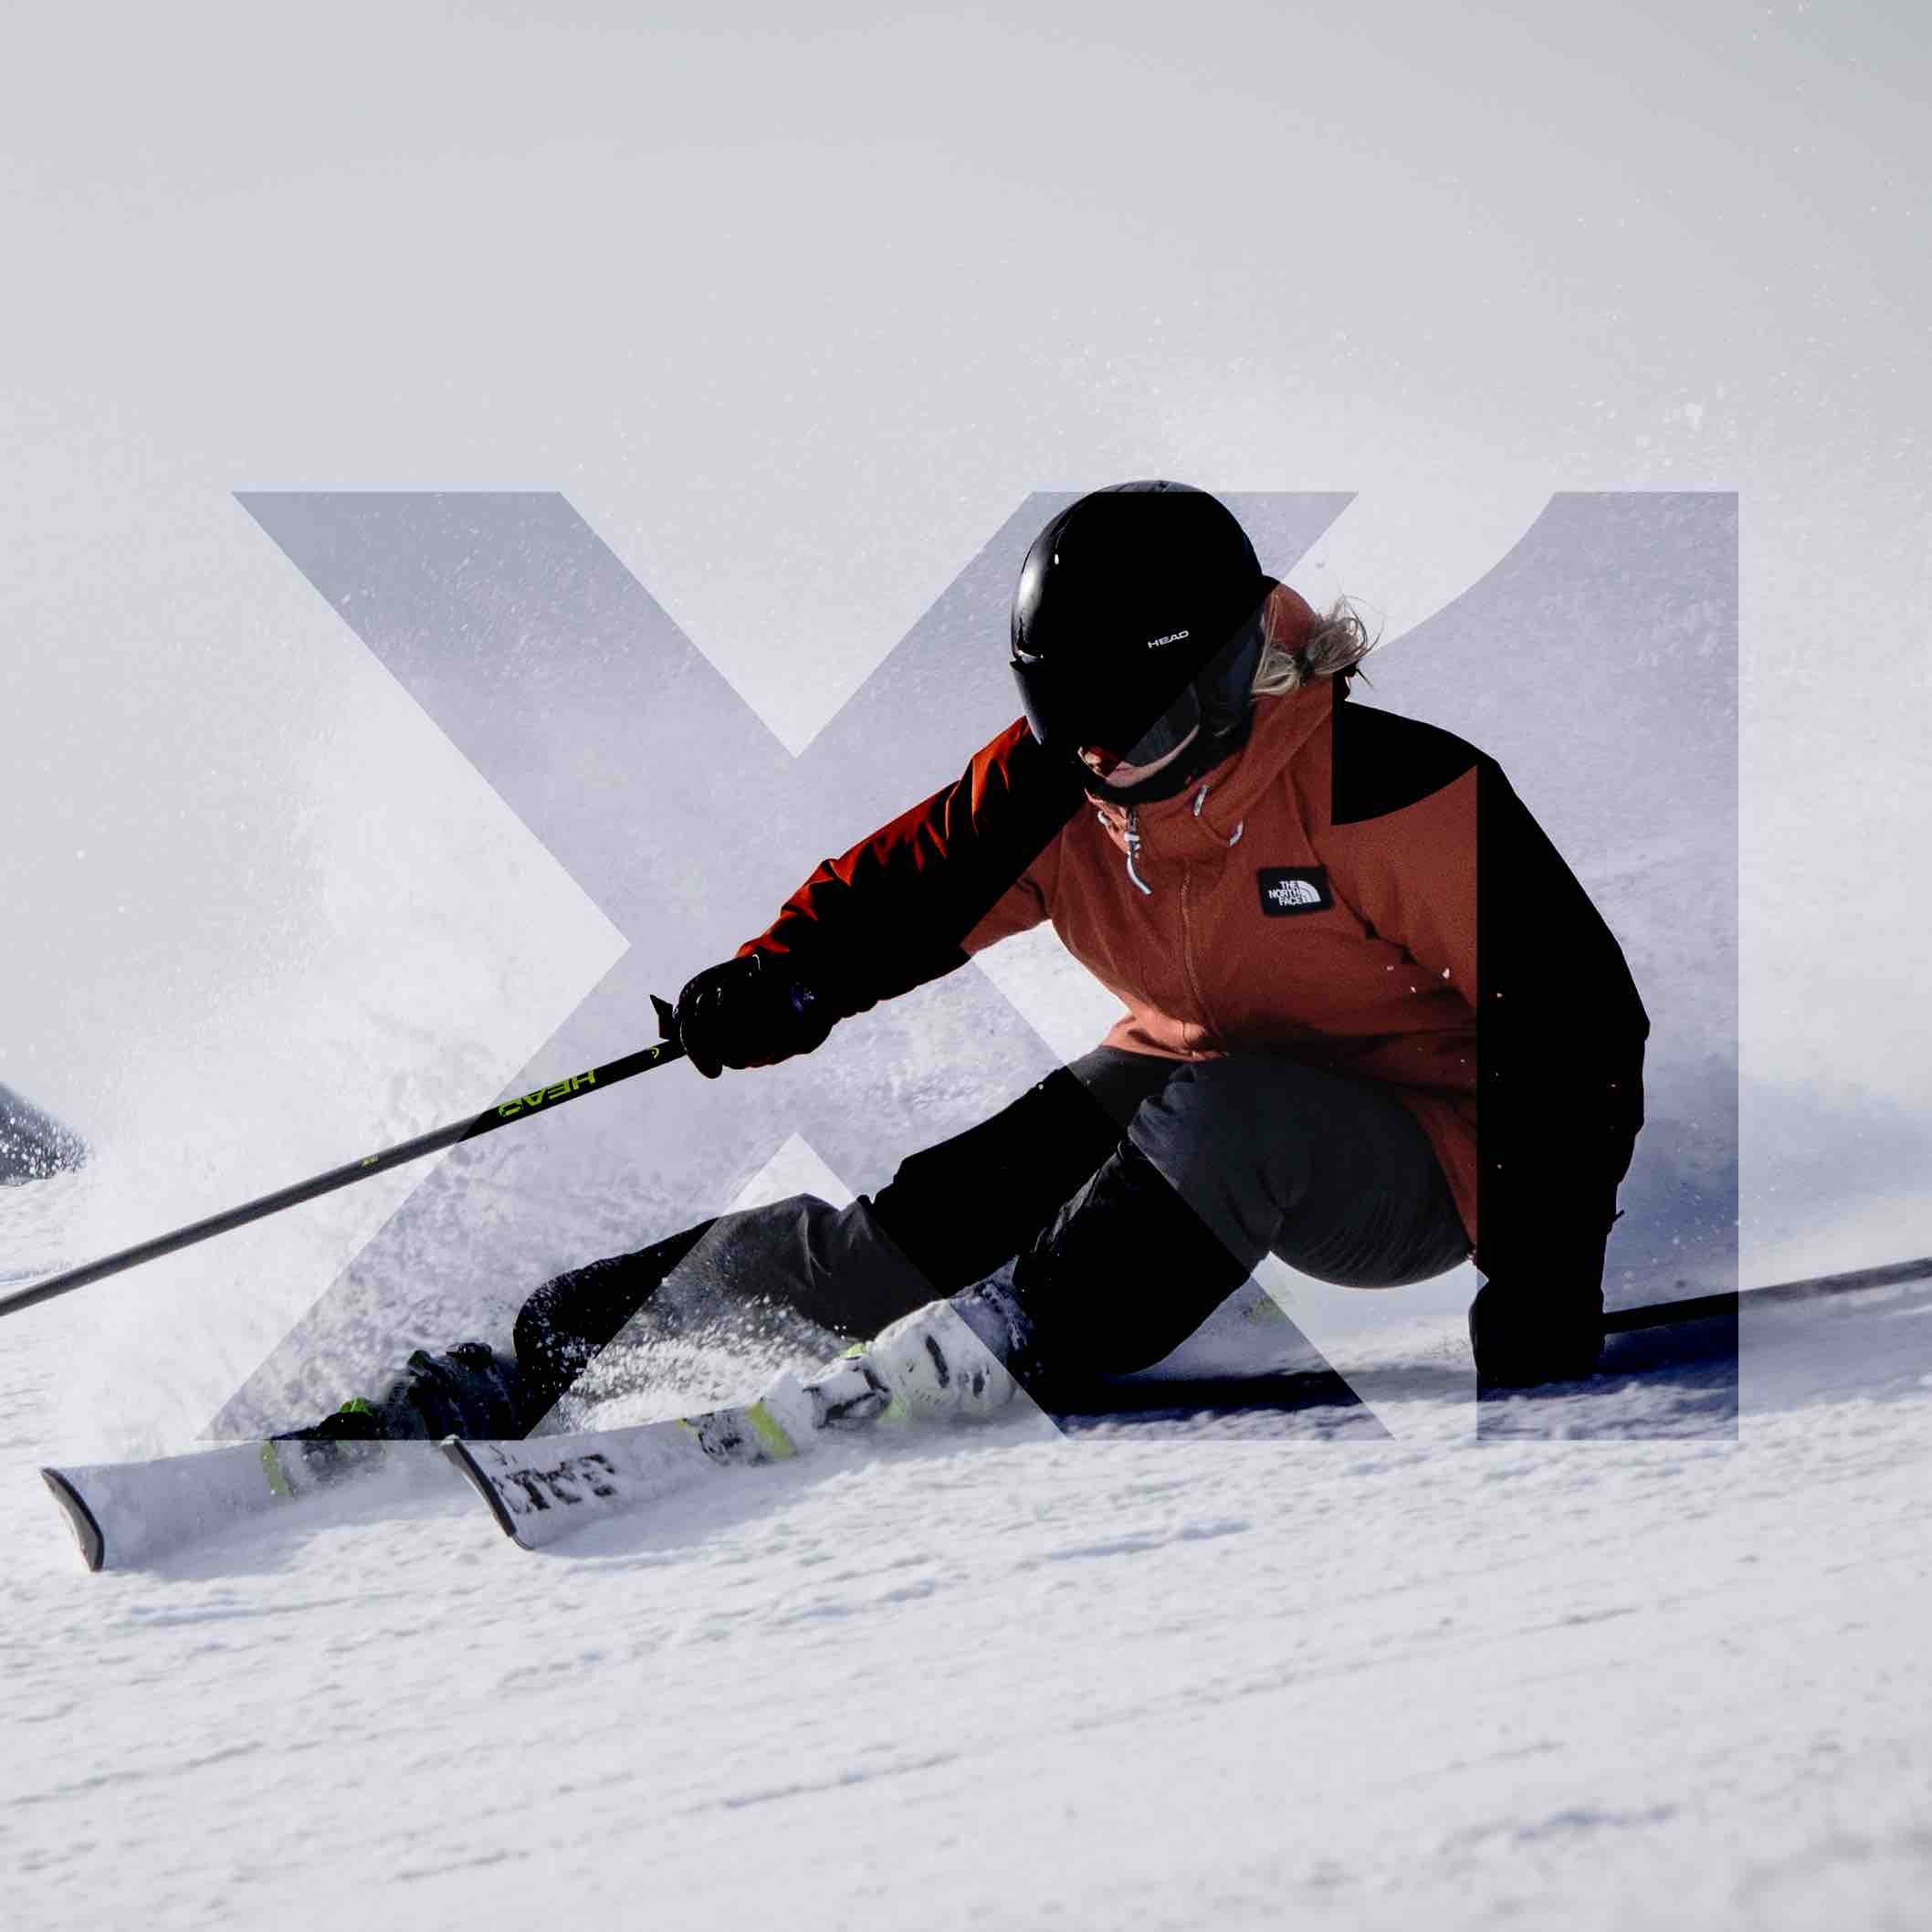 Spotlijster Simuleren Een hekel hebben aan SKIMEESTERS - Professioneel handmatig ski en snowboard onderhoud –  Skimeesters